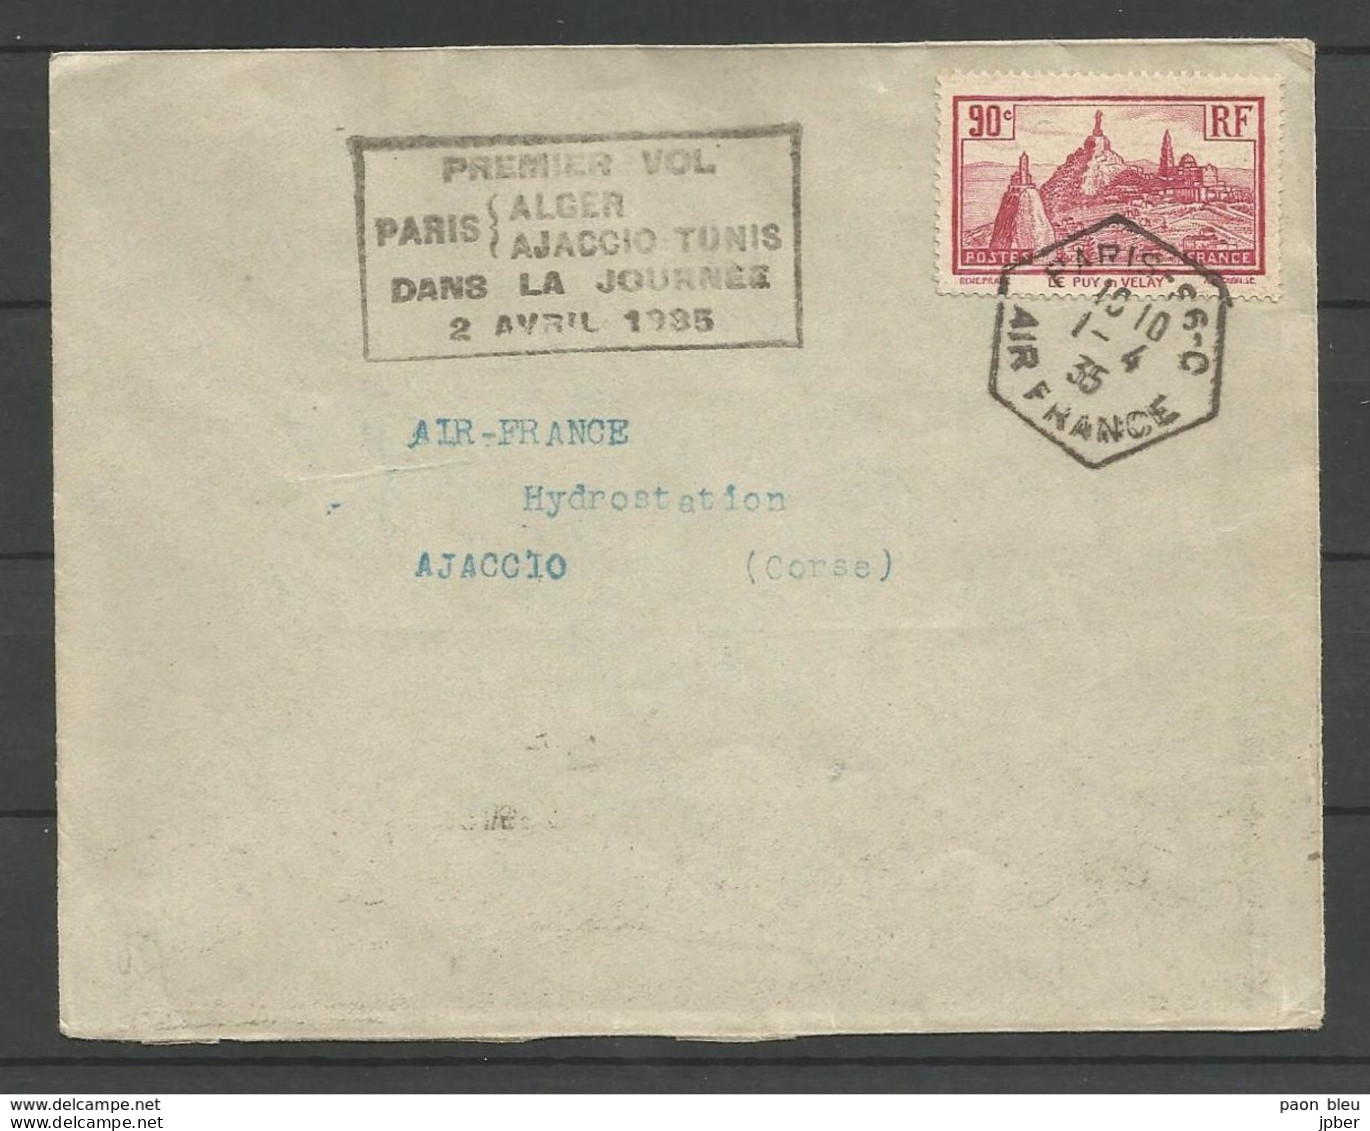 France - Aérophilatélie - Lettre Paris-Ajaccio 01/01/35 + Cachet 1er Vol Paris-Alger-Ajaccio-Tunis - 1960-.... Briefe & Dokumente